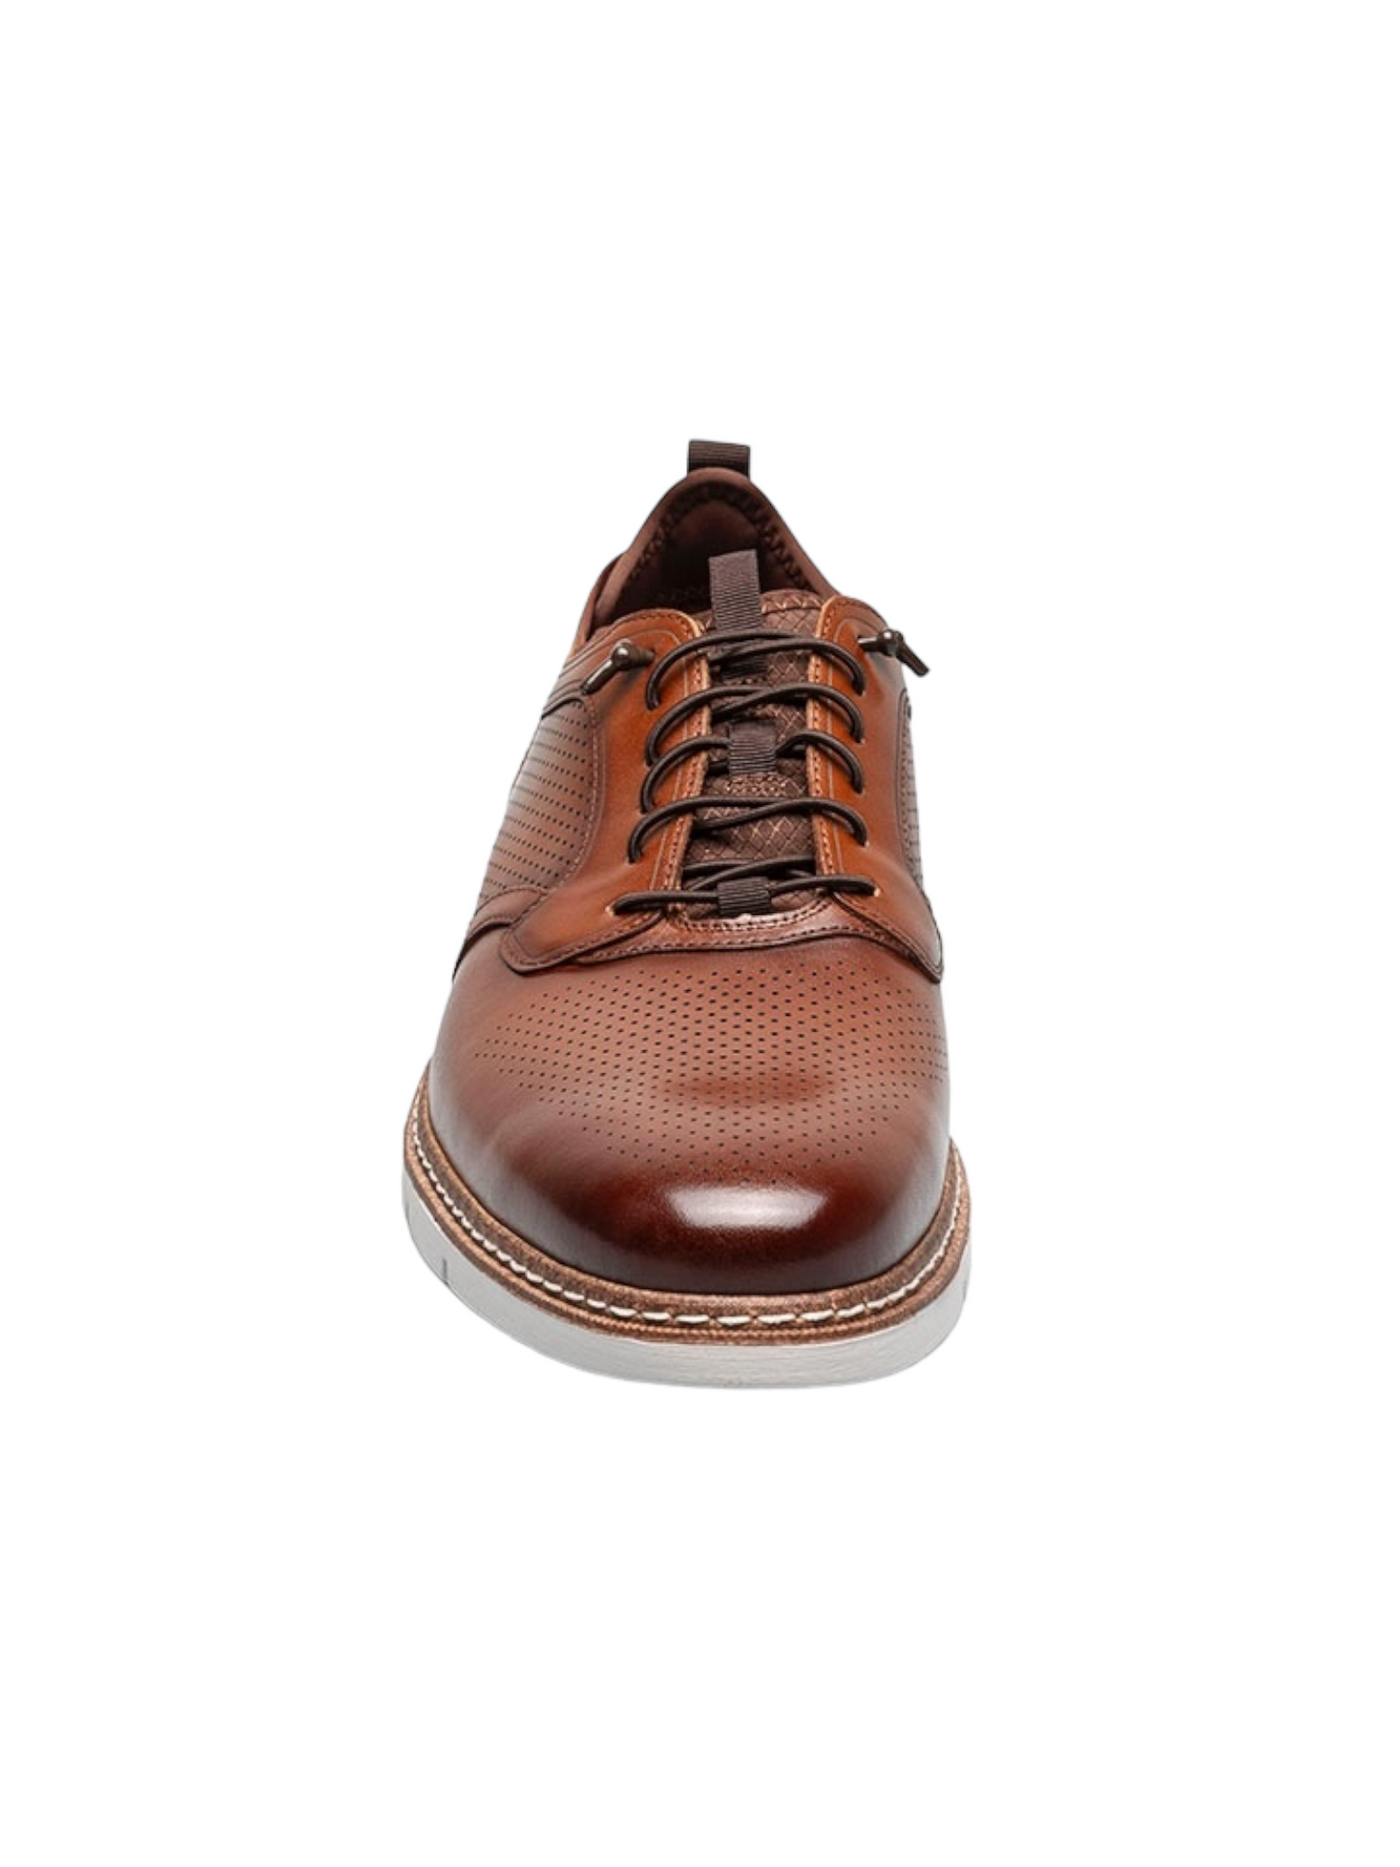 Chaussures en cuir cognac à lacets élastiques Synchro